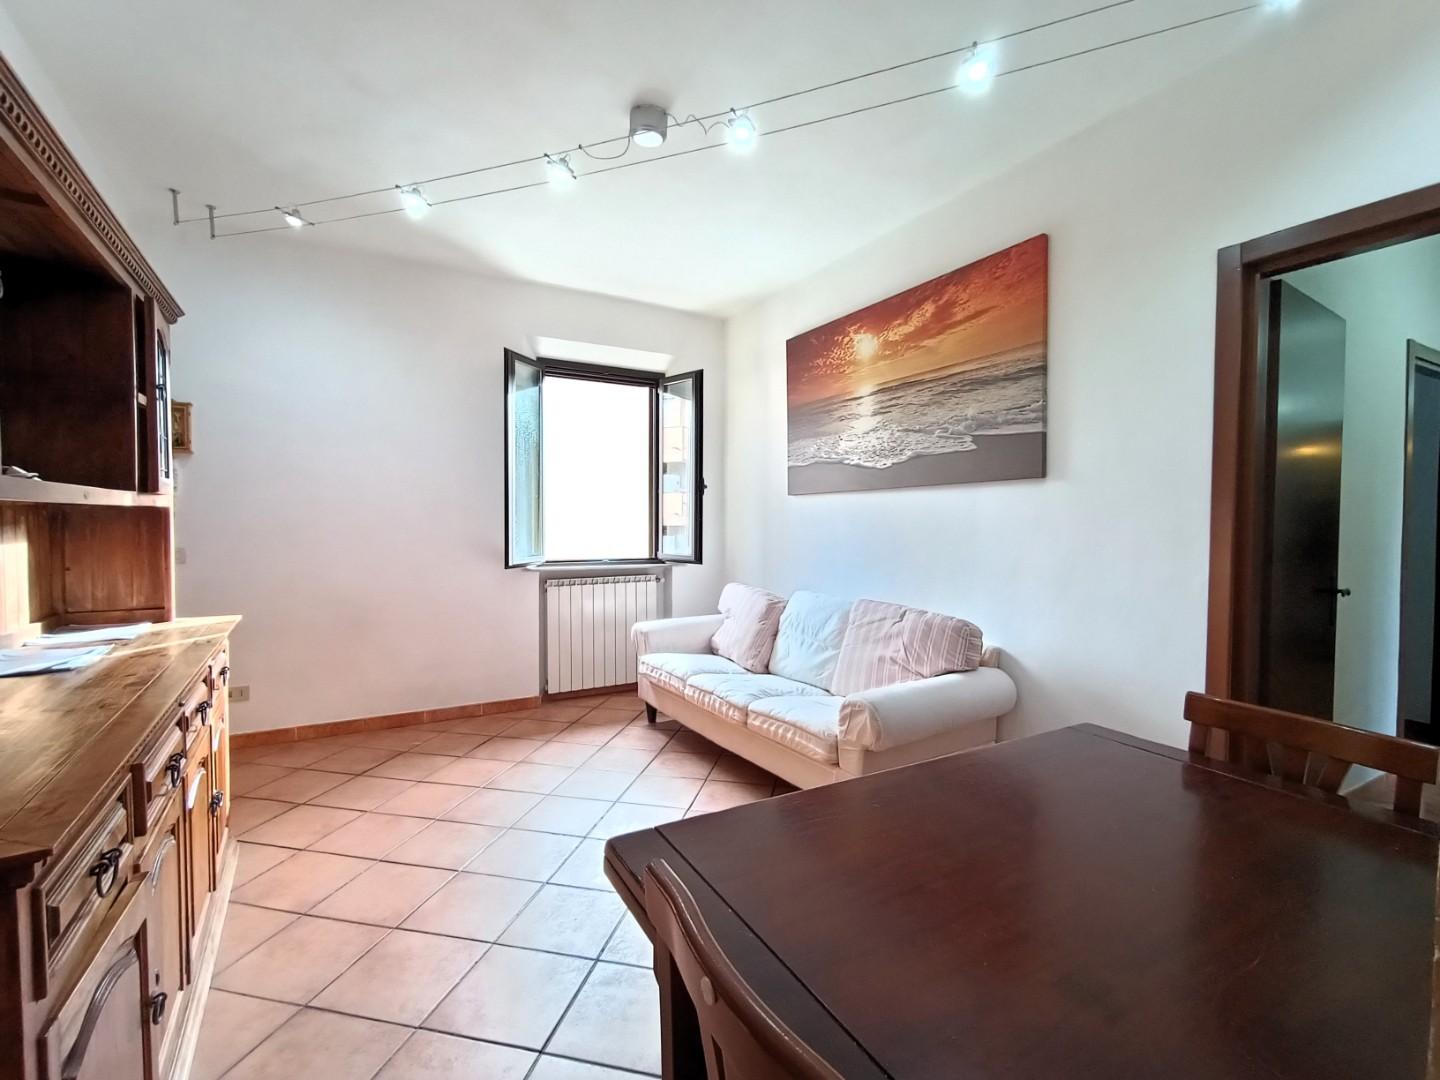 Appartamento in vendita a Pisa, 5 locali, prezzo € 215.000 | PortaleAgenzieImmobiliari.it